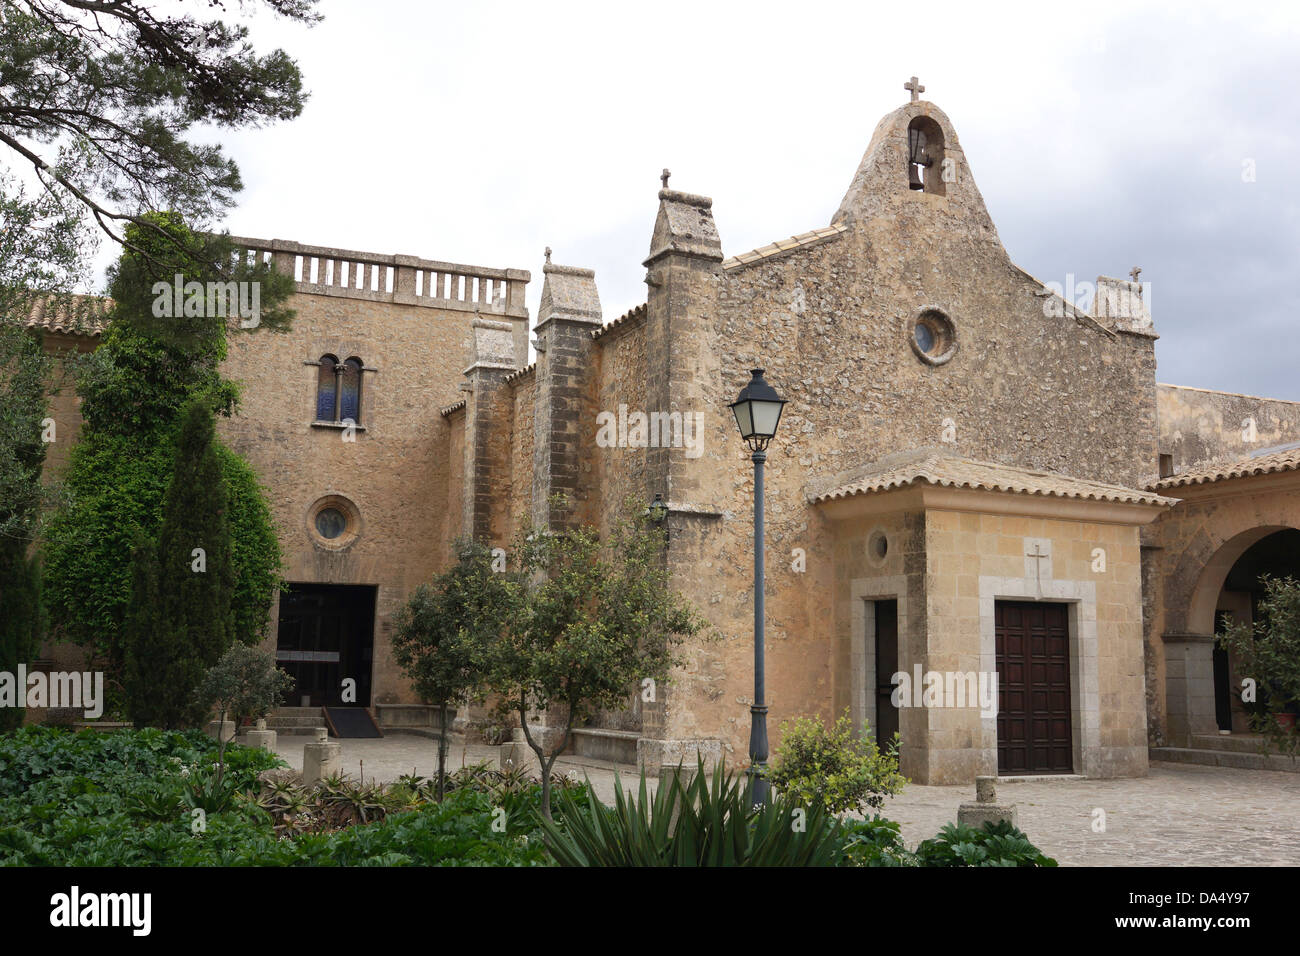 Santuari de Nostra Senyora de cura, Puig de Randa, entre llucmajor et Llucmajor, Mallorca, Espagne Banque D'Images